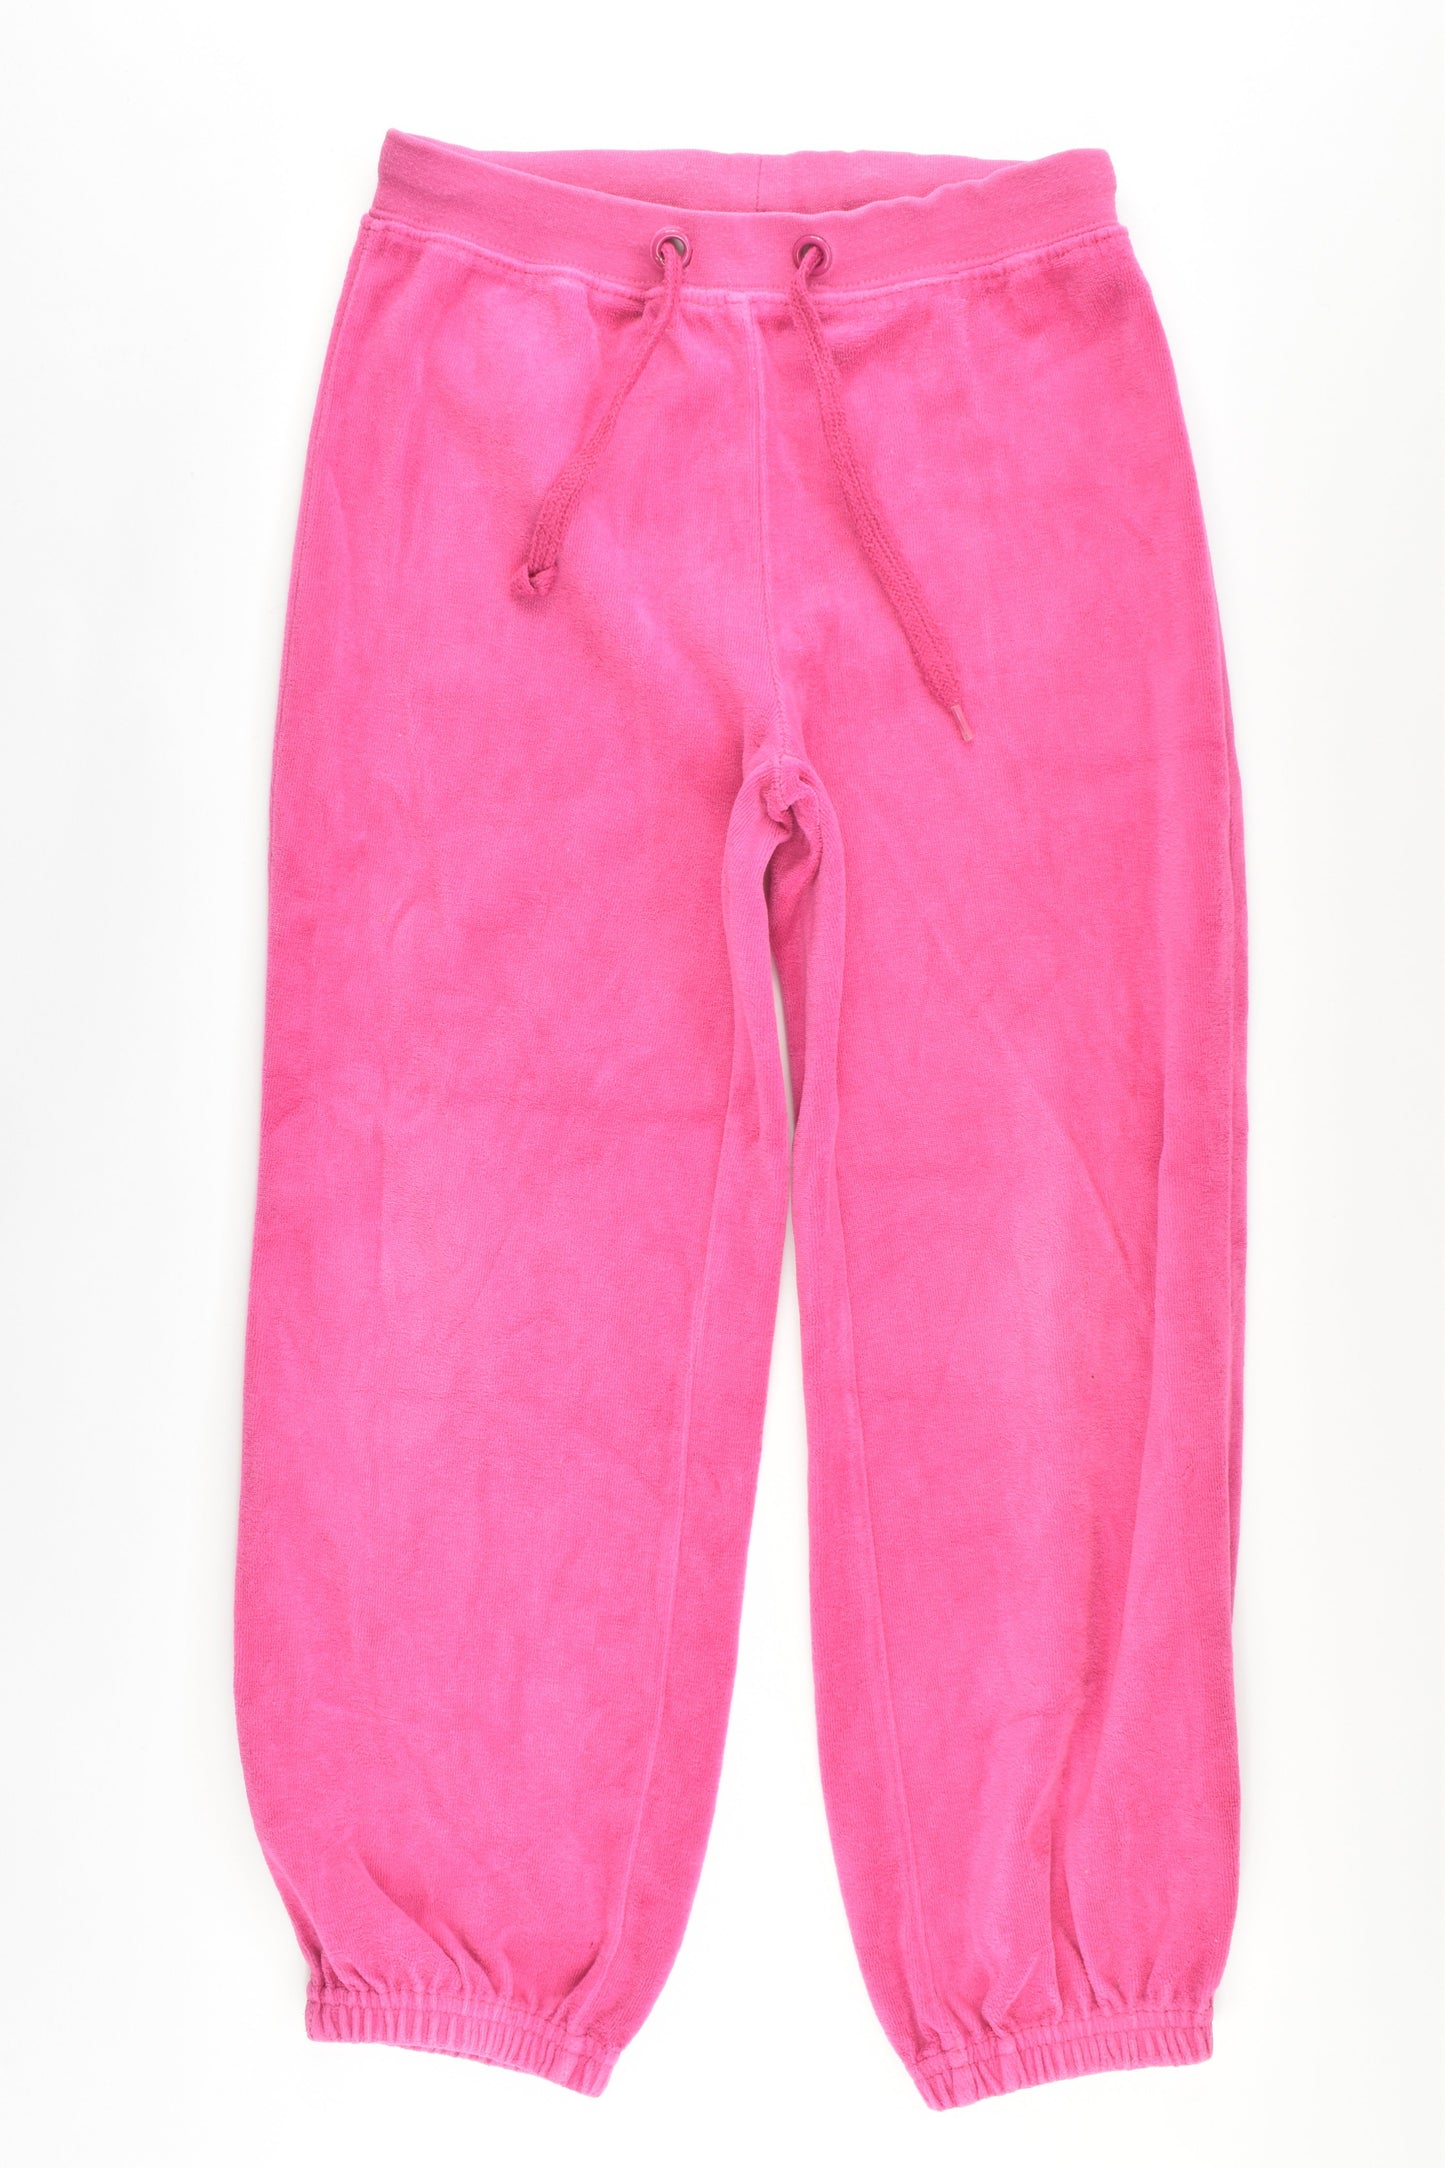 Ciraf Size 6 (116 cm) Velour Pants